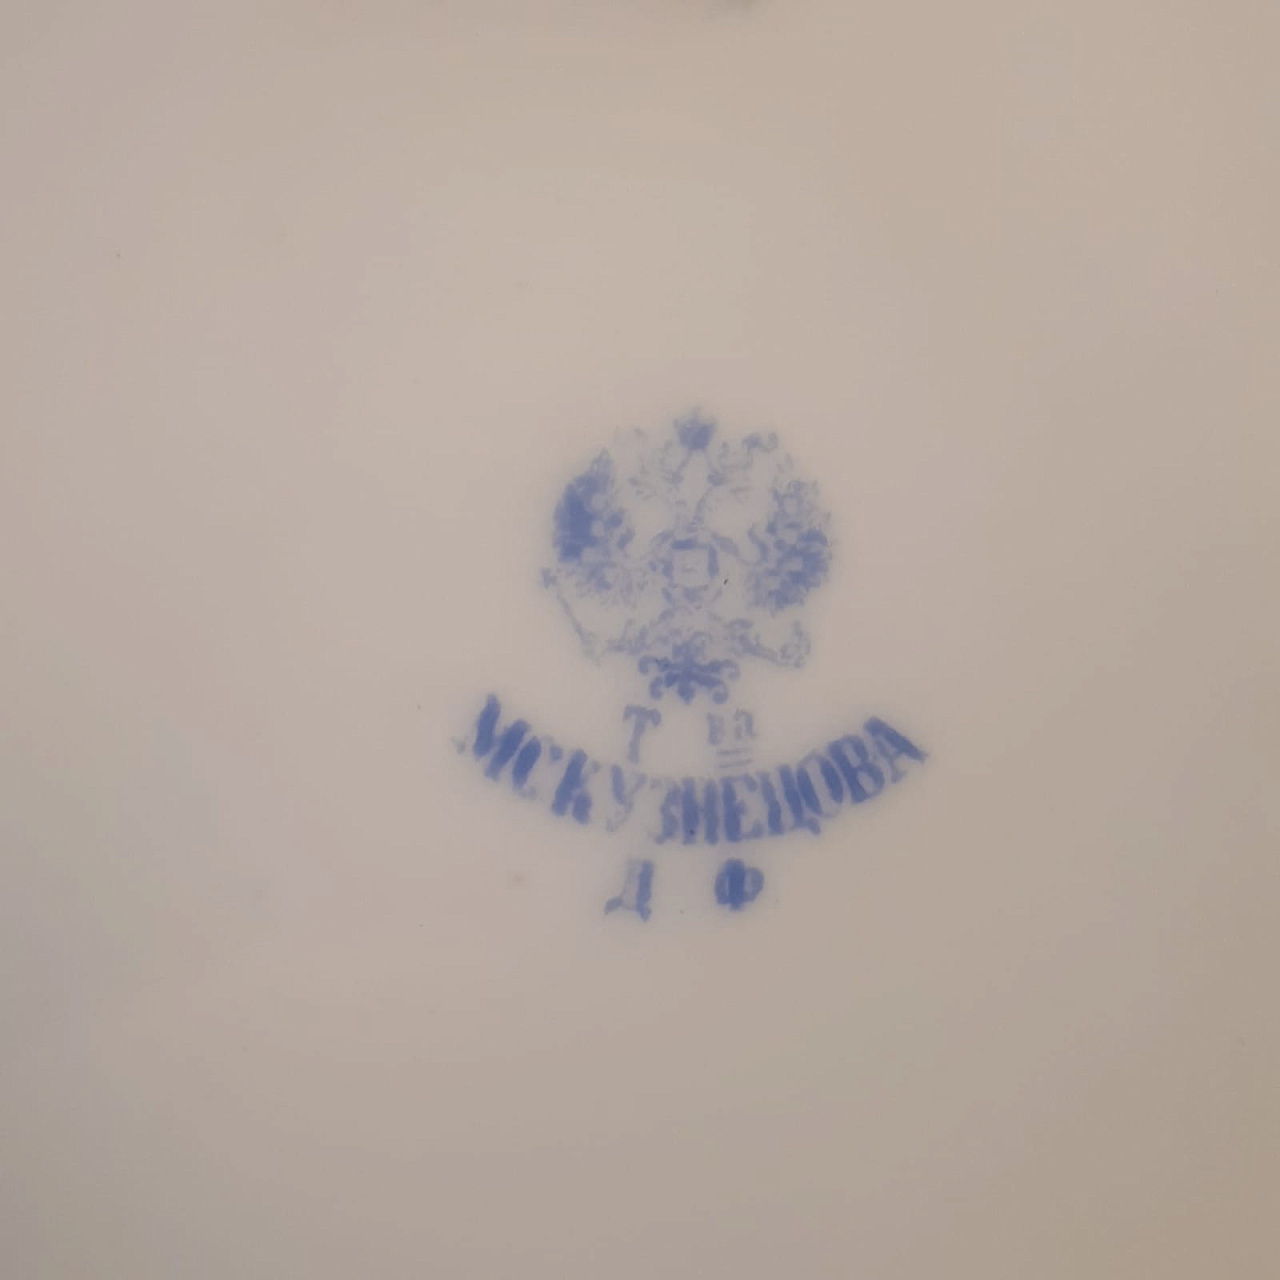 Тарелка фарфоровая, Кузнецов с монограммой 136 Таганрогского Полка фото 4